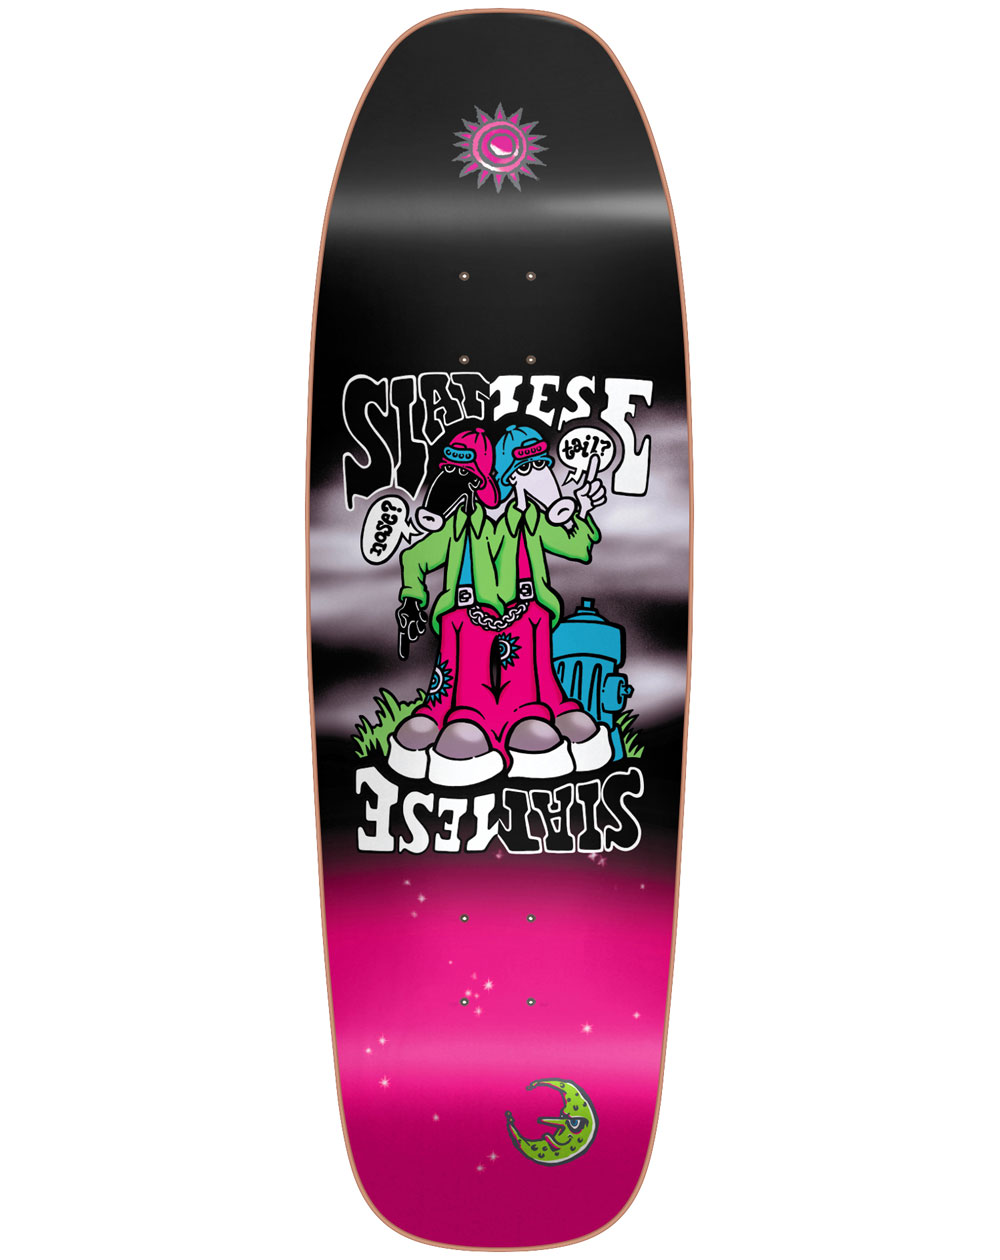 New Deal Plateaux Skateboard Siamese 9.375" Neon